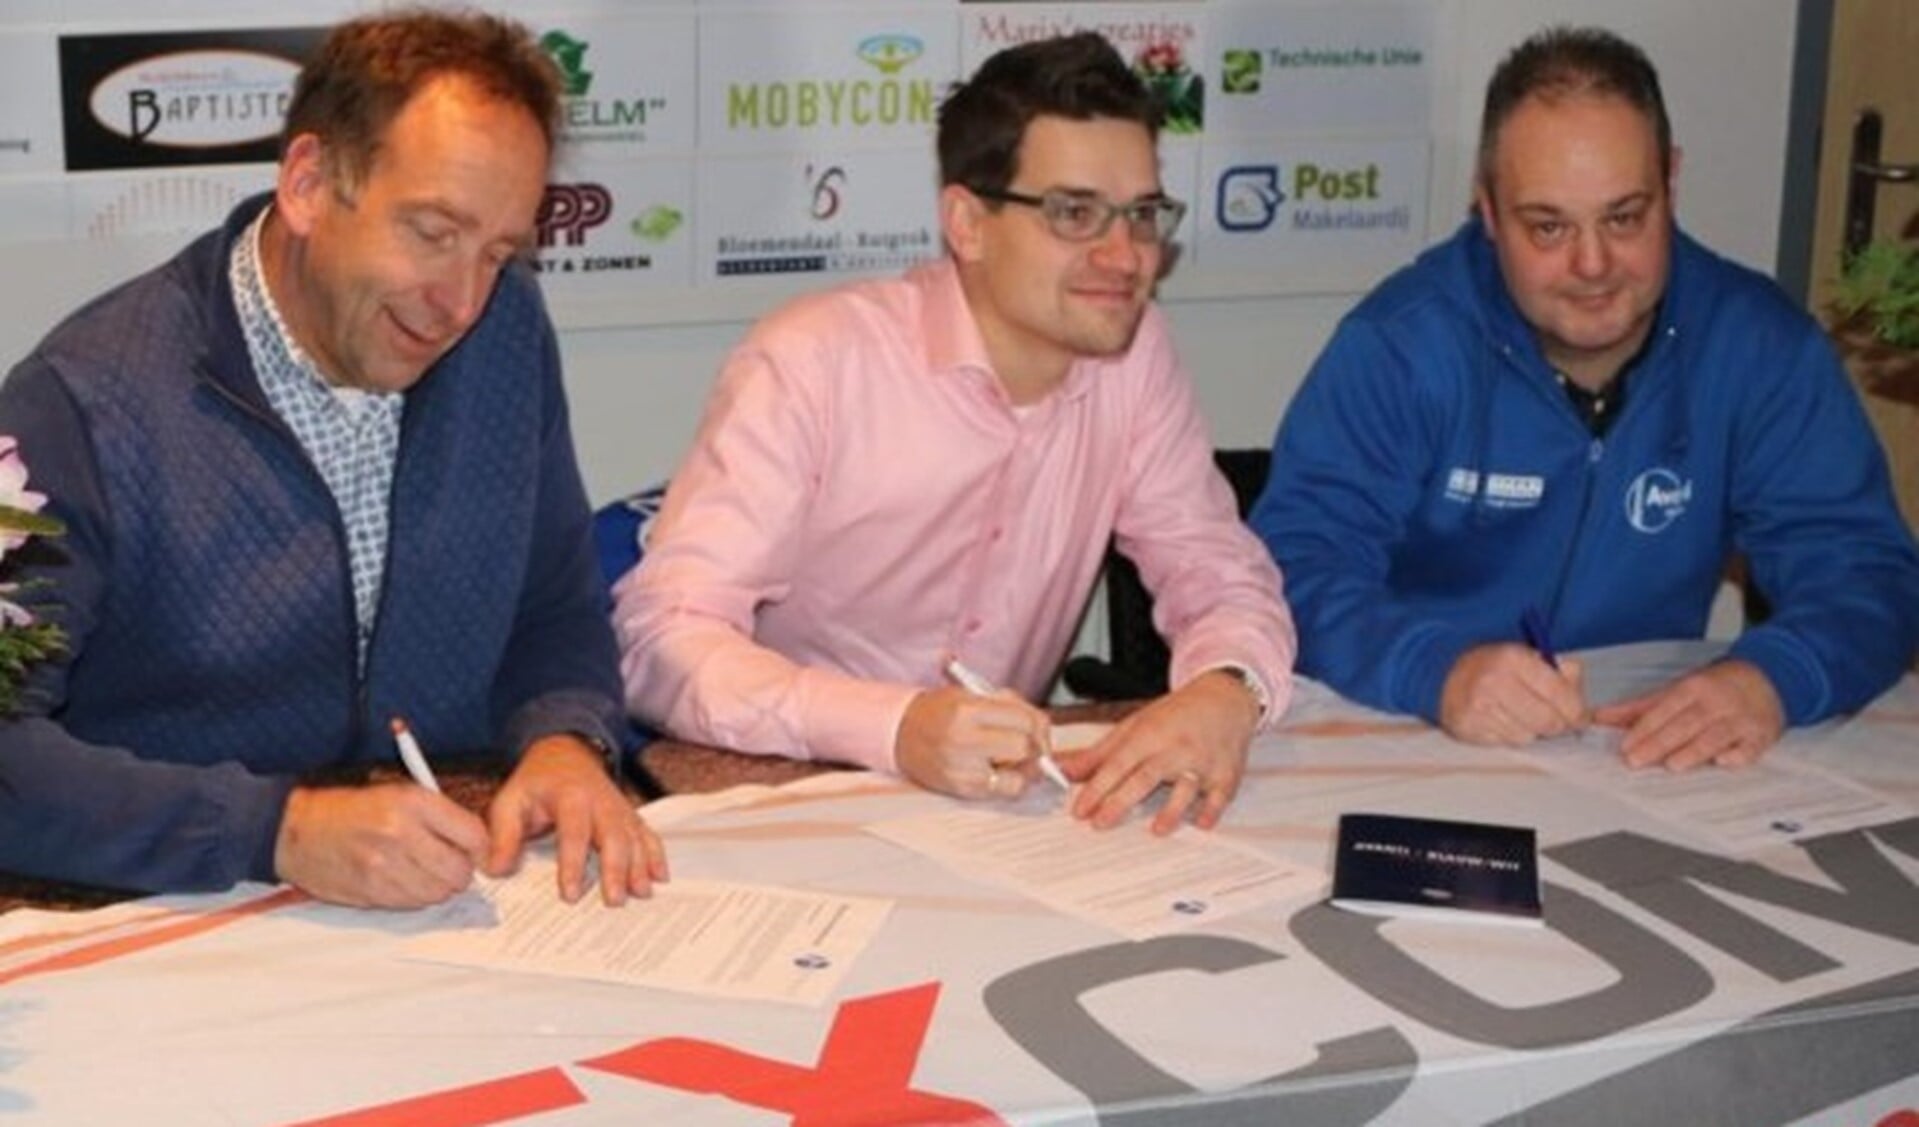 Voorzitter Johan Diepens en Jaap Cammeraat van FLEXCOM ondertekenen sponsorovereenkomst.